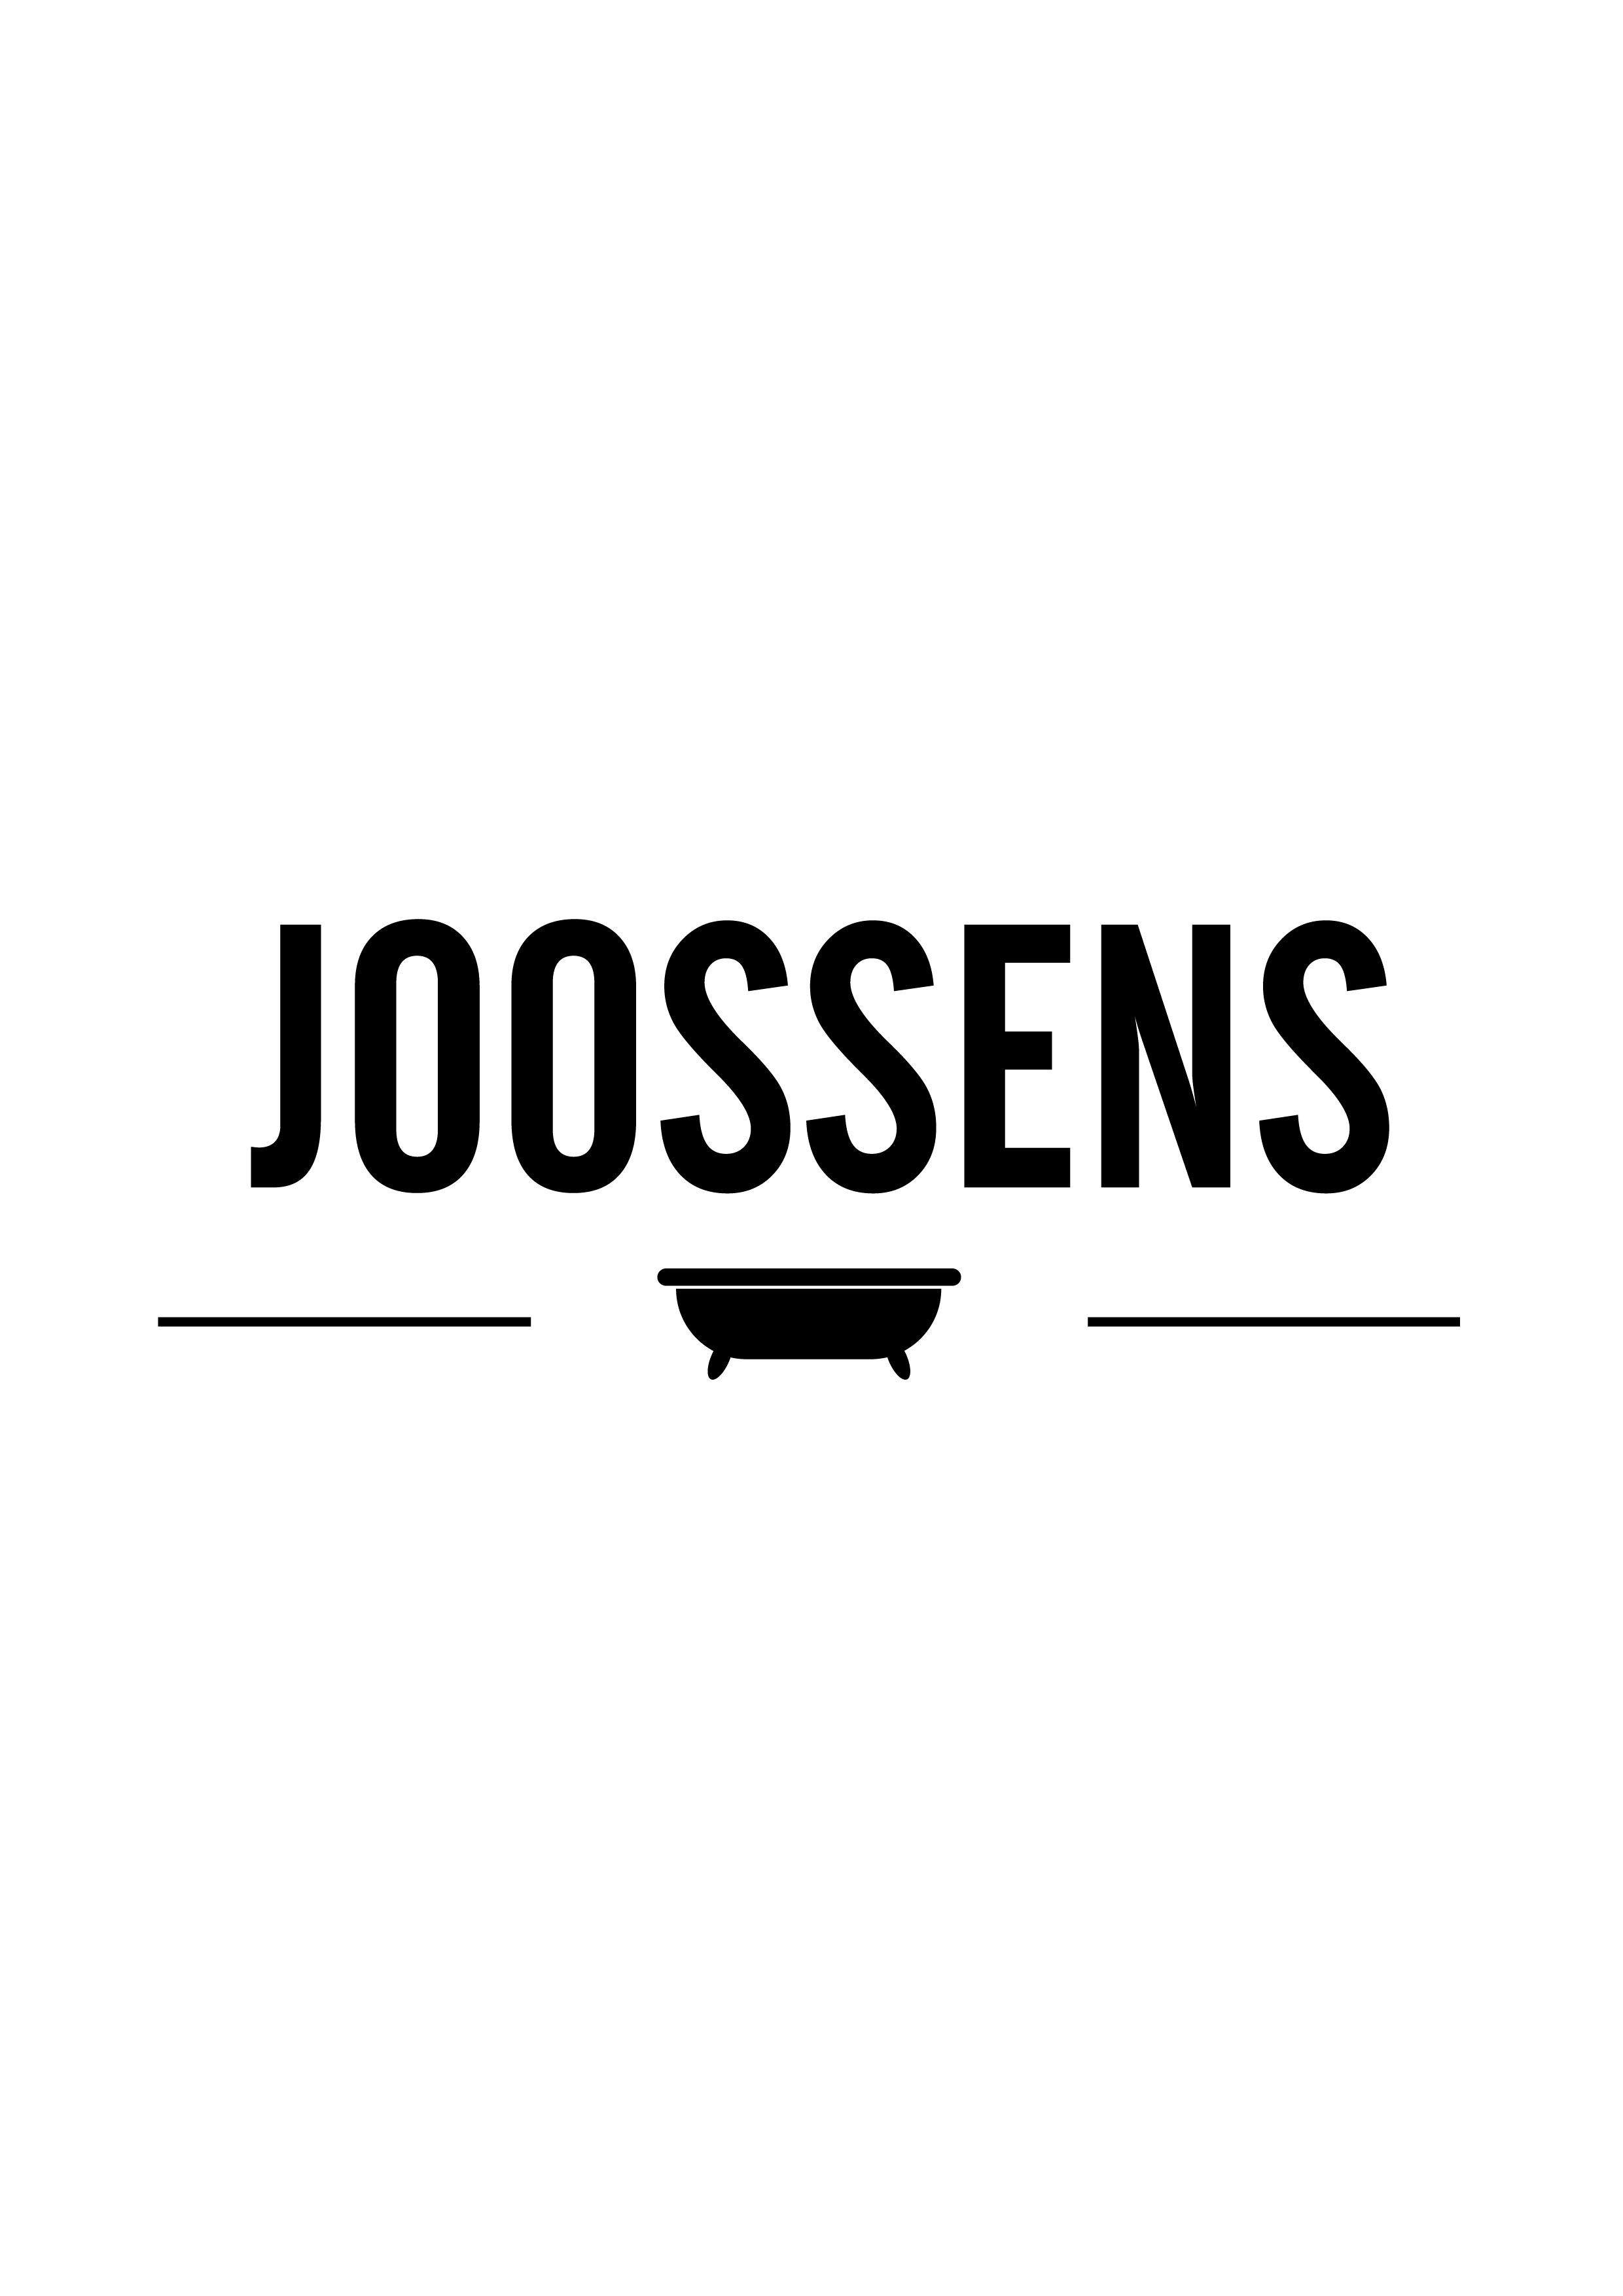 joossens